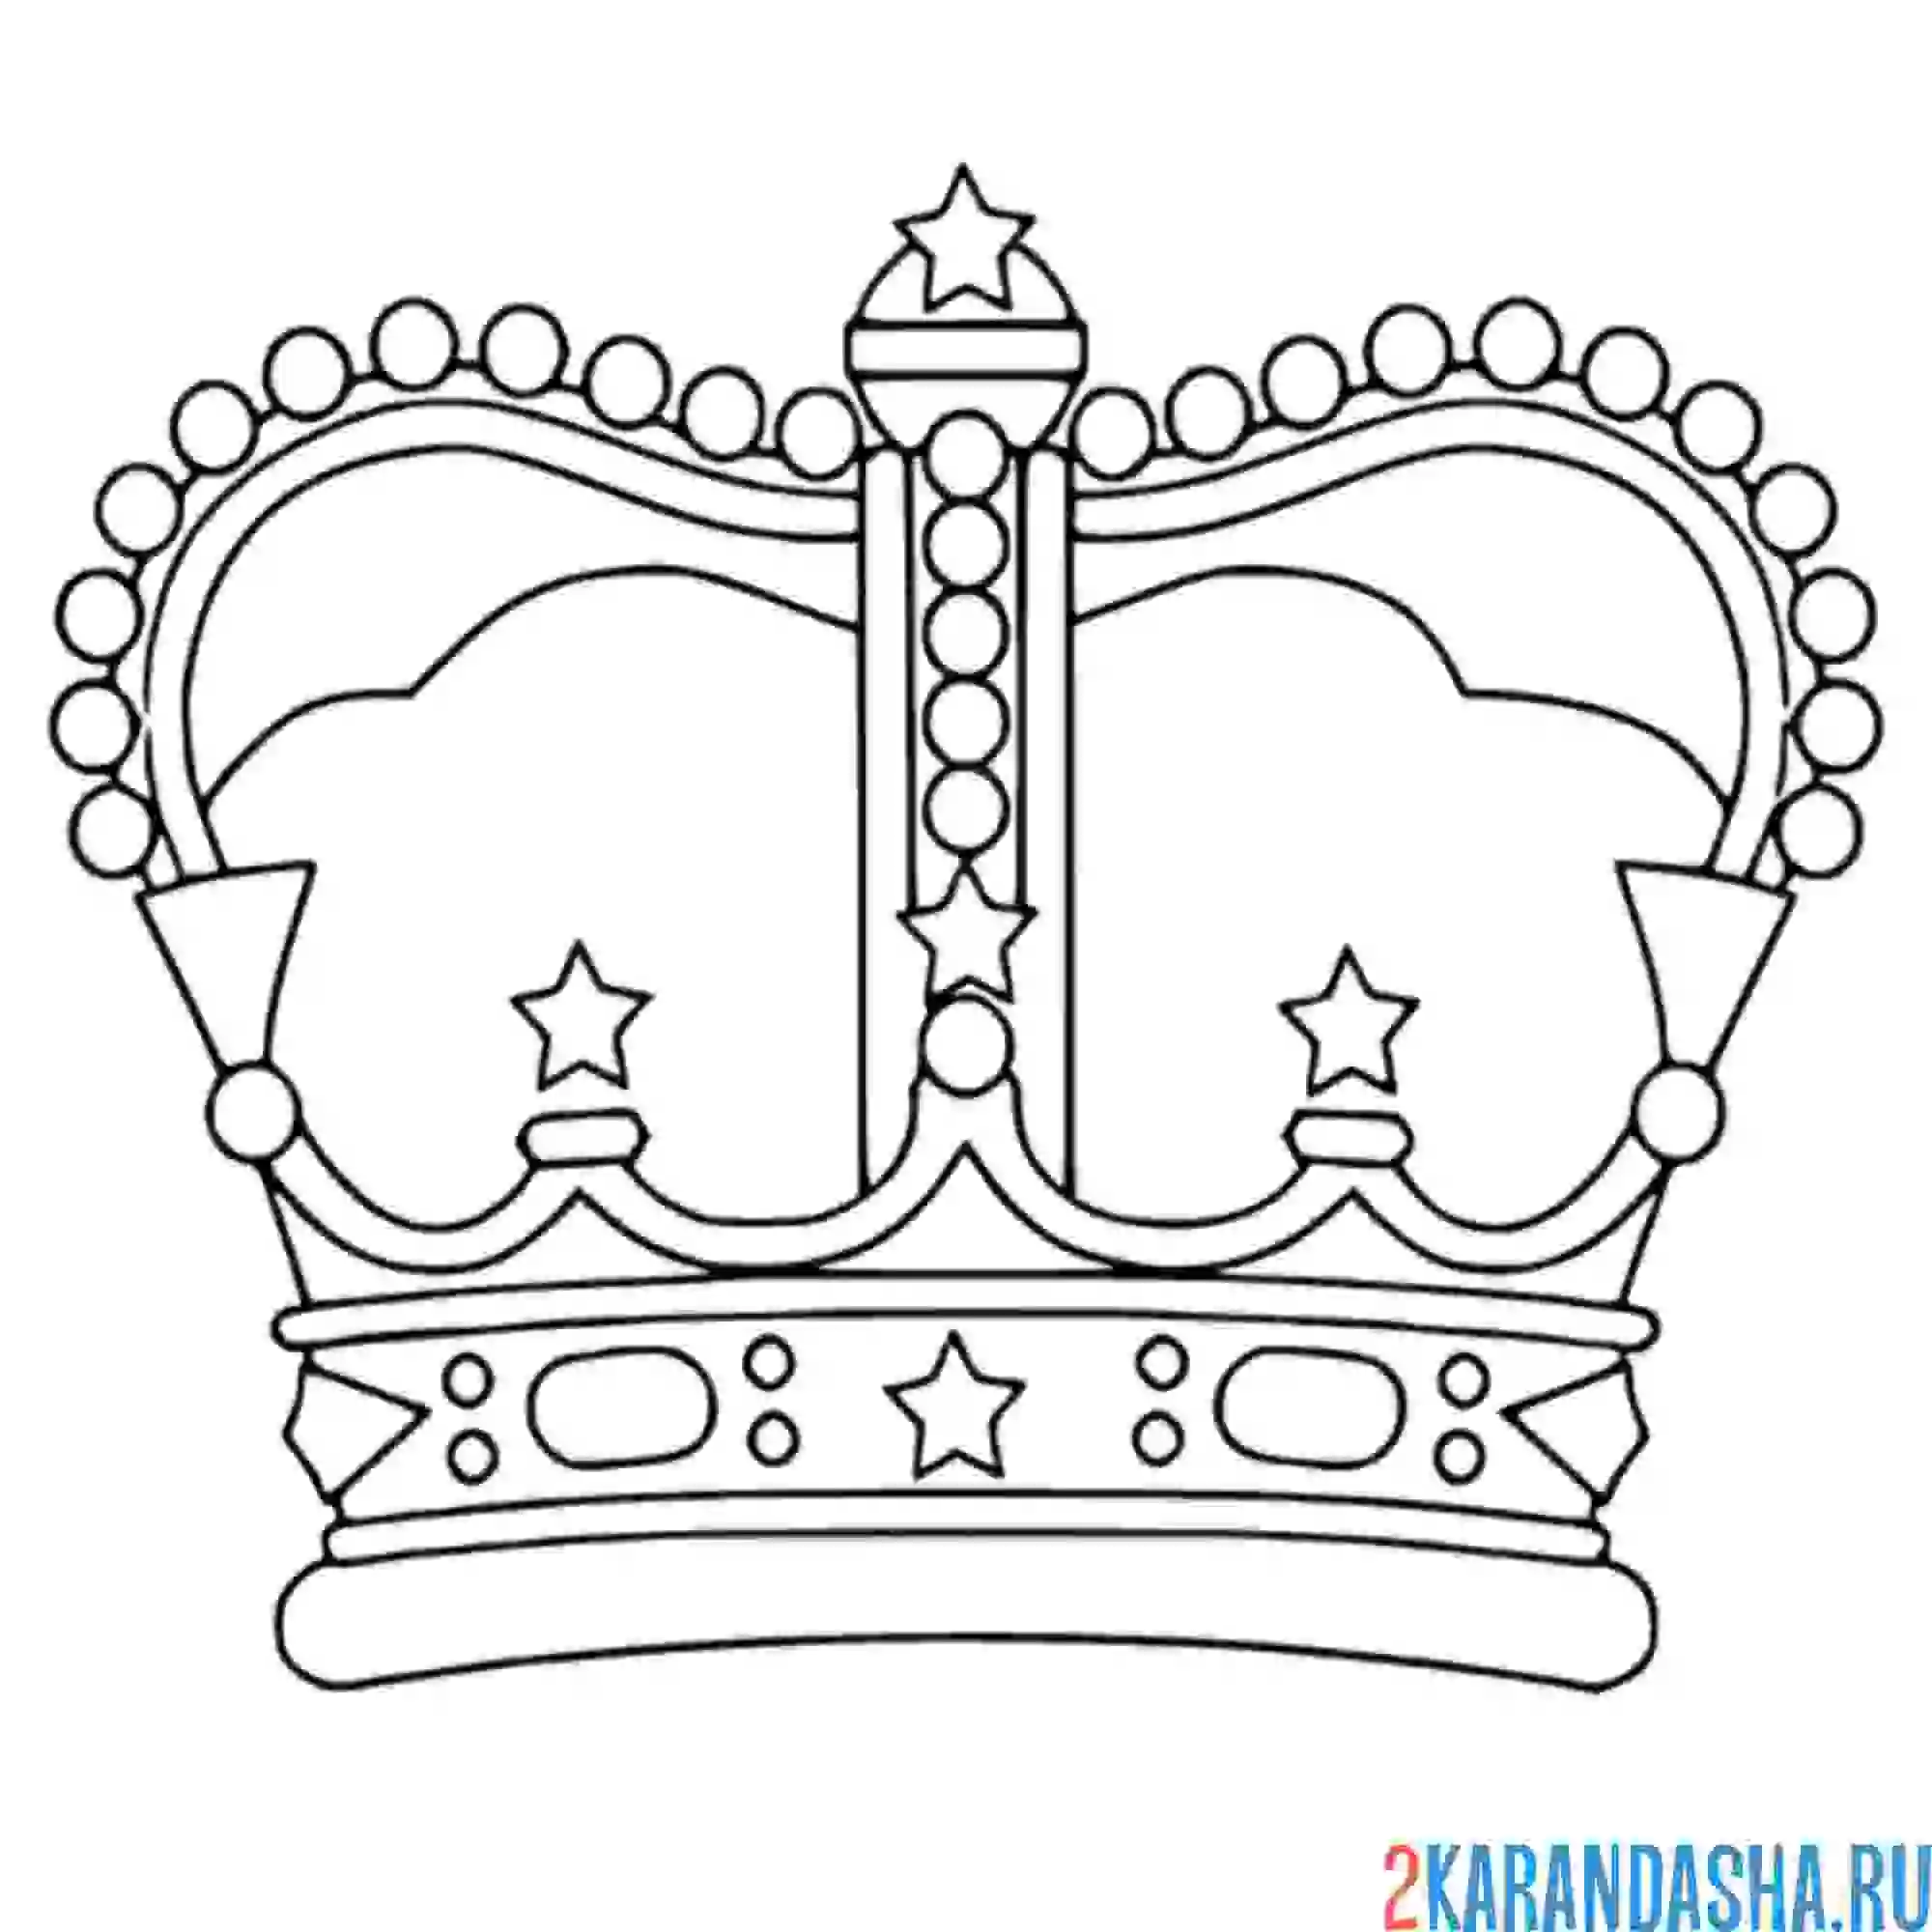 Раскраска корона императора